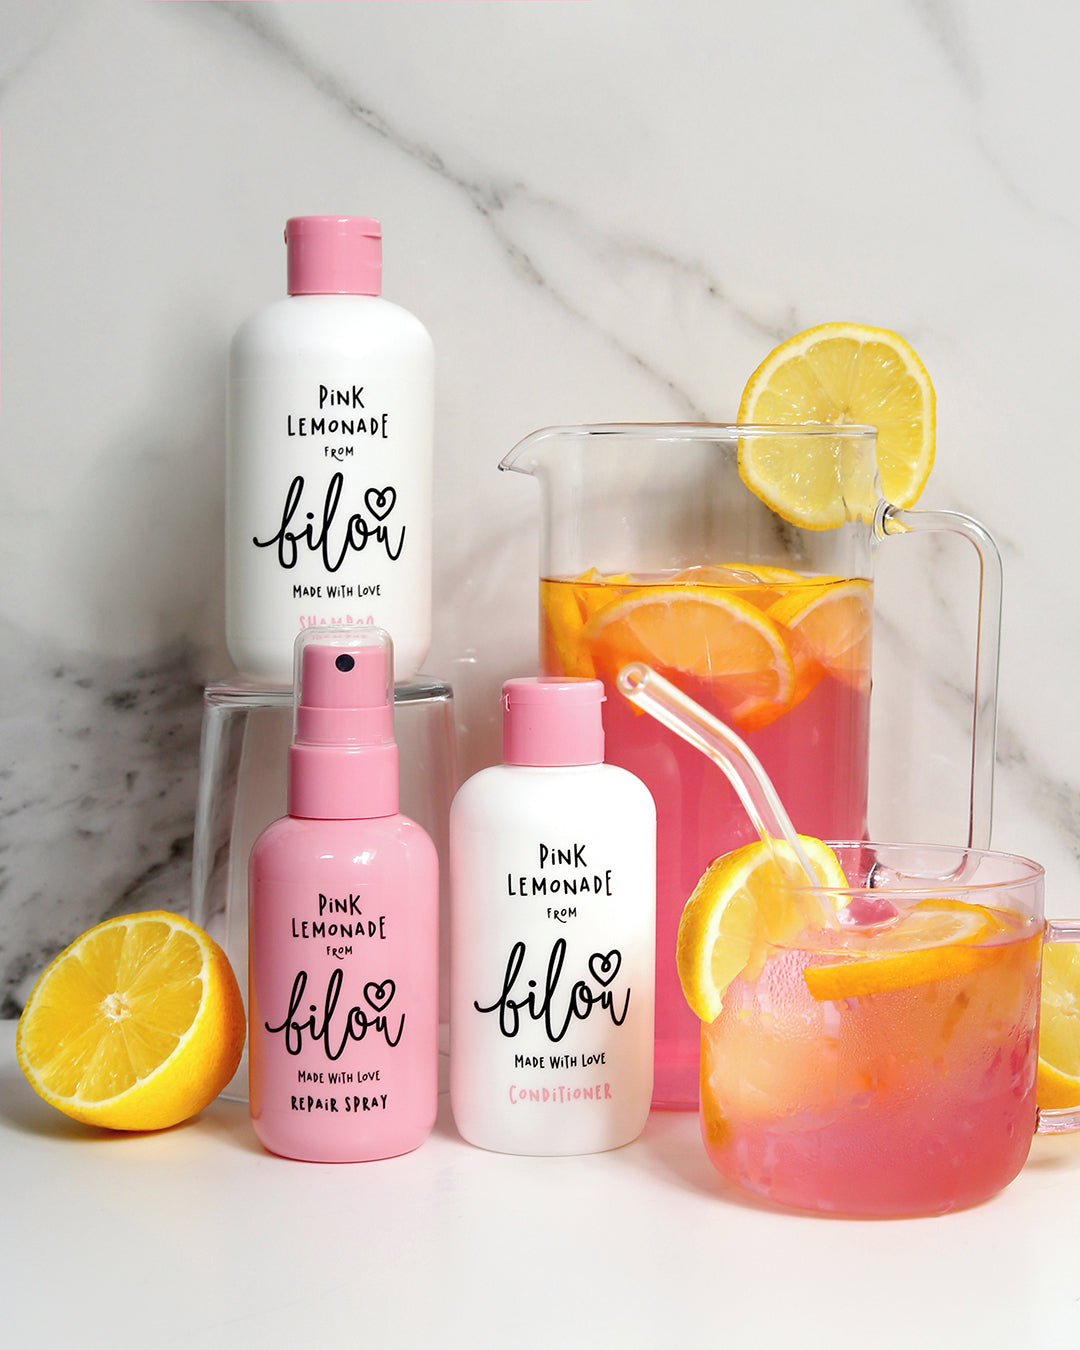 Bilou Shampoo Pink Lemonade